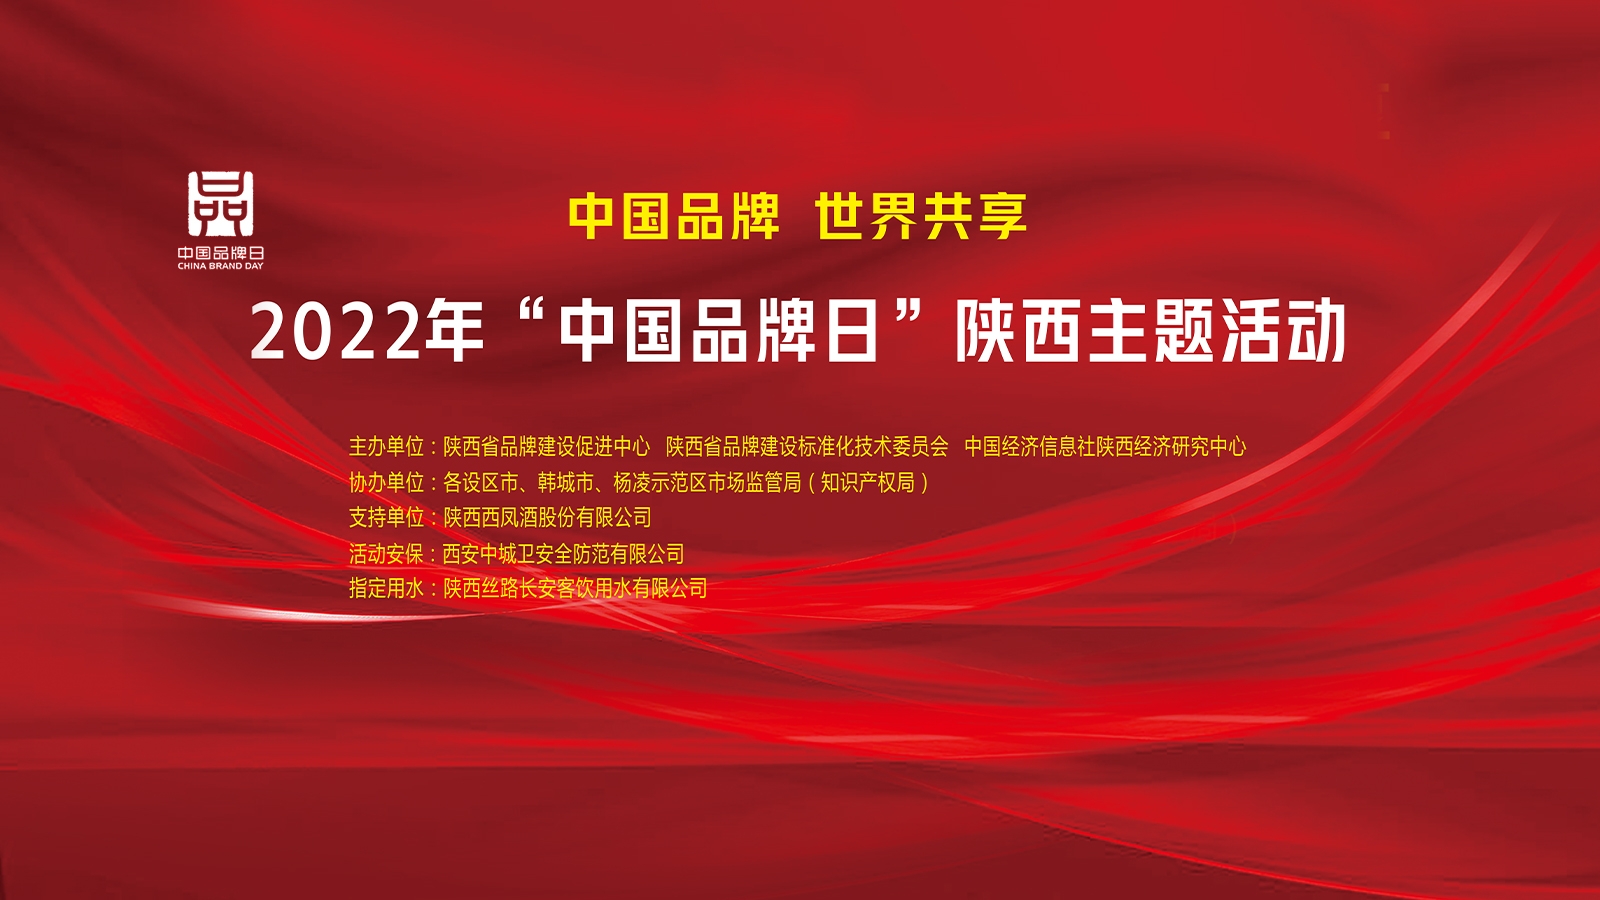 2022年“中国品牌日”陕西主题活动